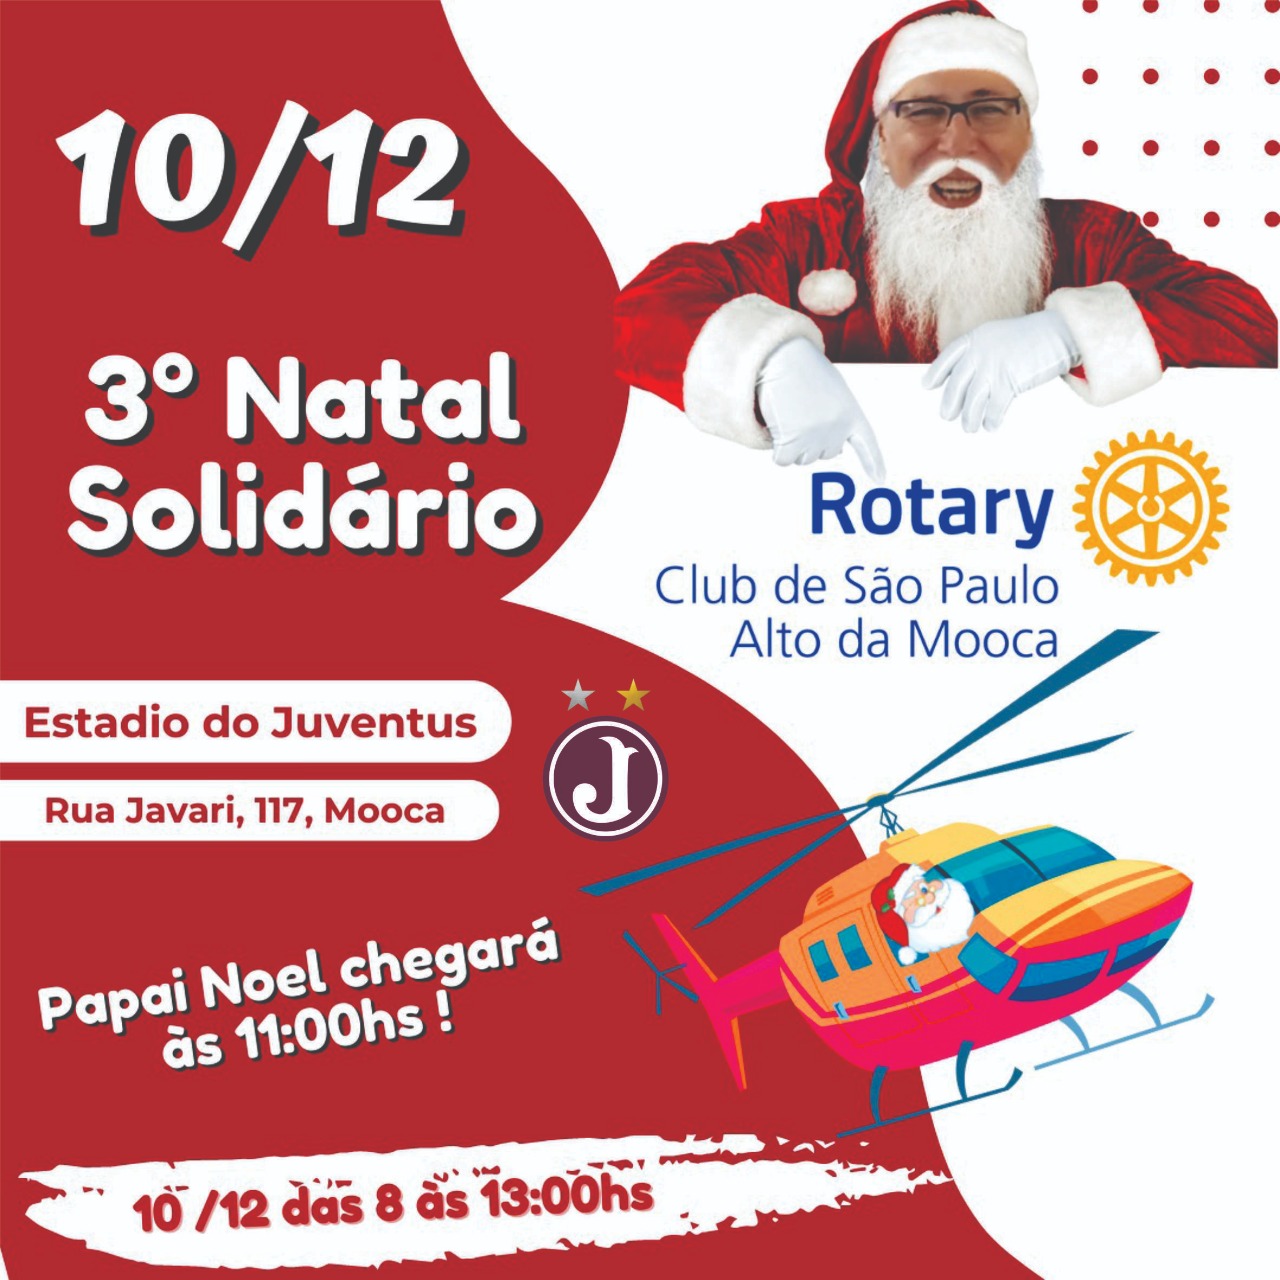 Rotary Club Alto da Mooca realiza o 3° Natal Solidário no Estádio do Juventus